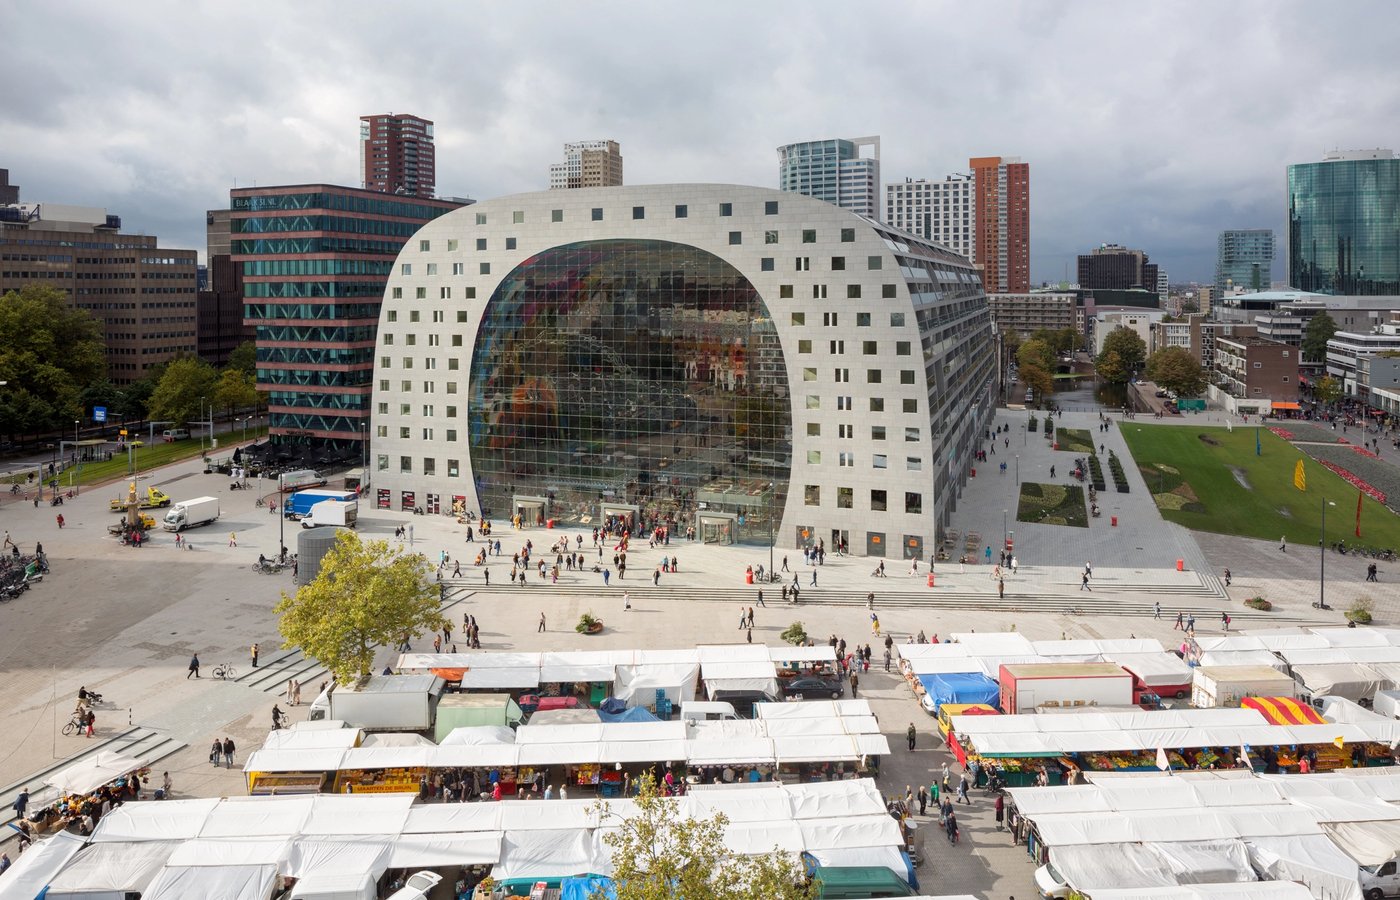 Zalig uitgeslapen en dol op architectuur, dus waar kan ik Rotterdam zien shinen? 